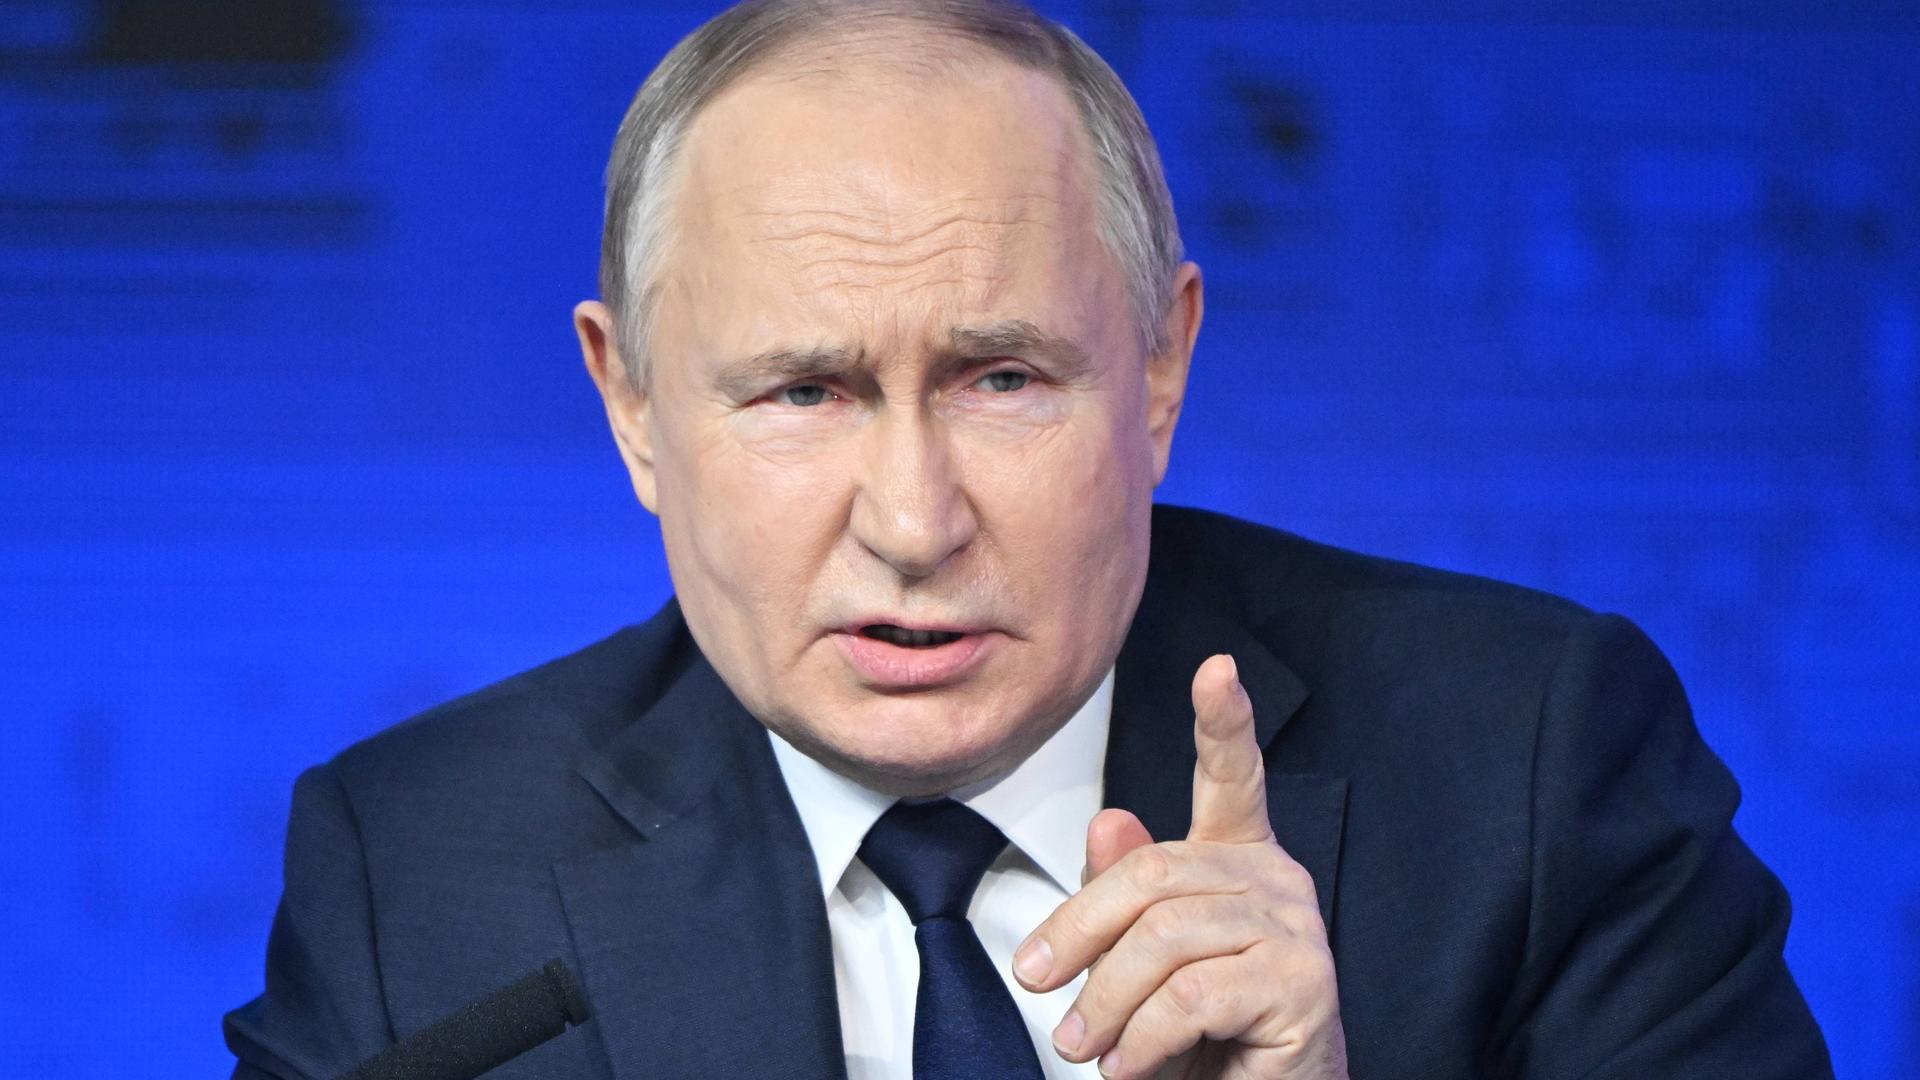 Der russische Präsident Wladimir Putin spricht hebt die linke Hand ein wenig hoch.